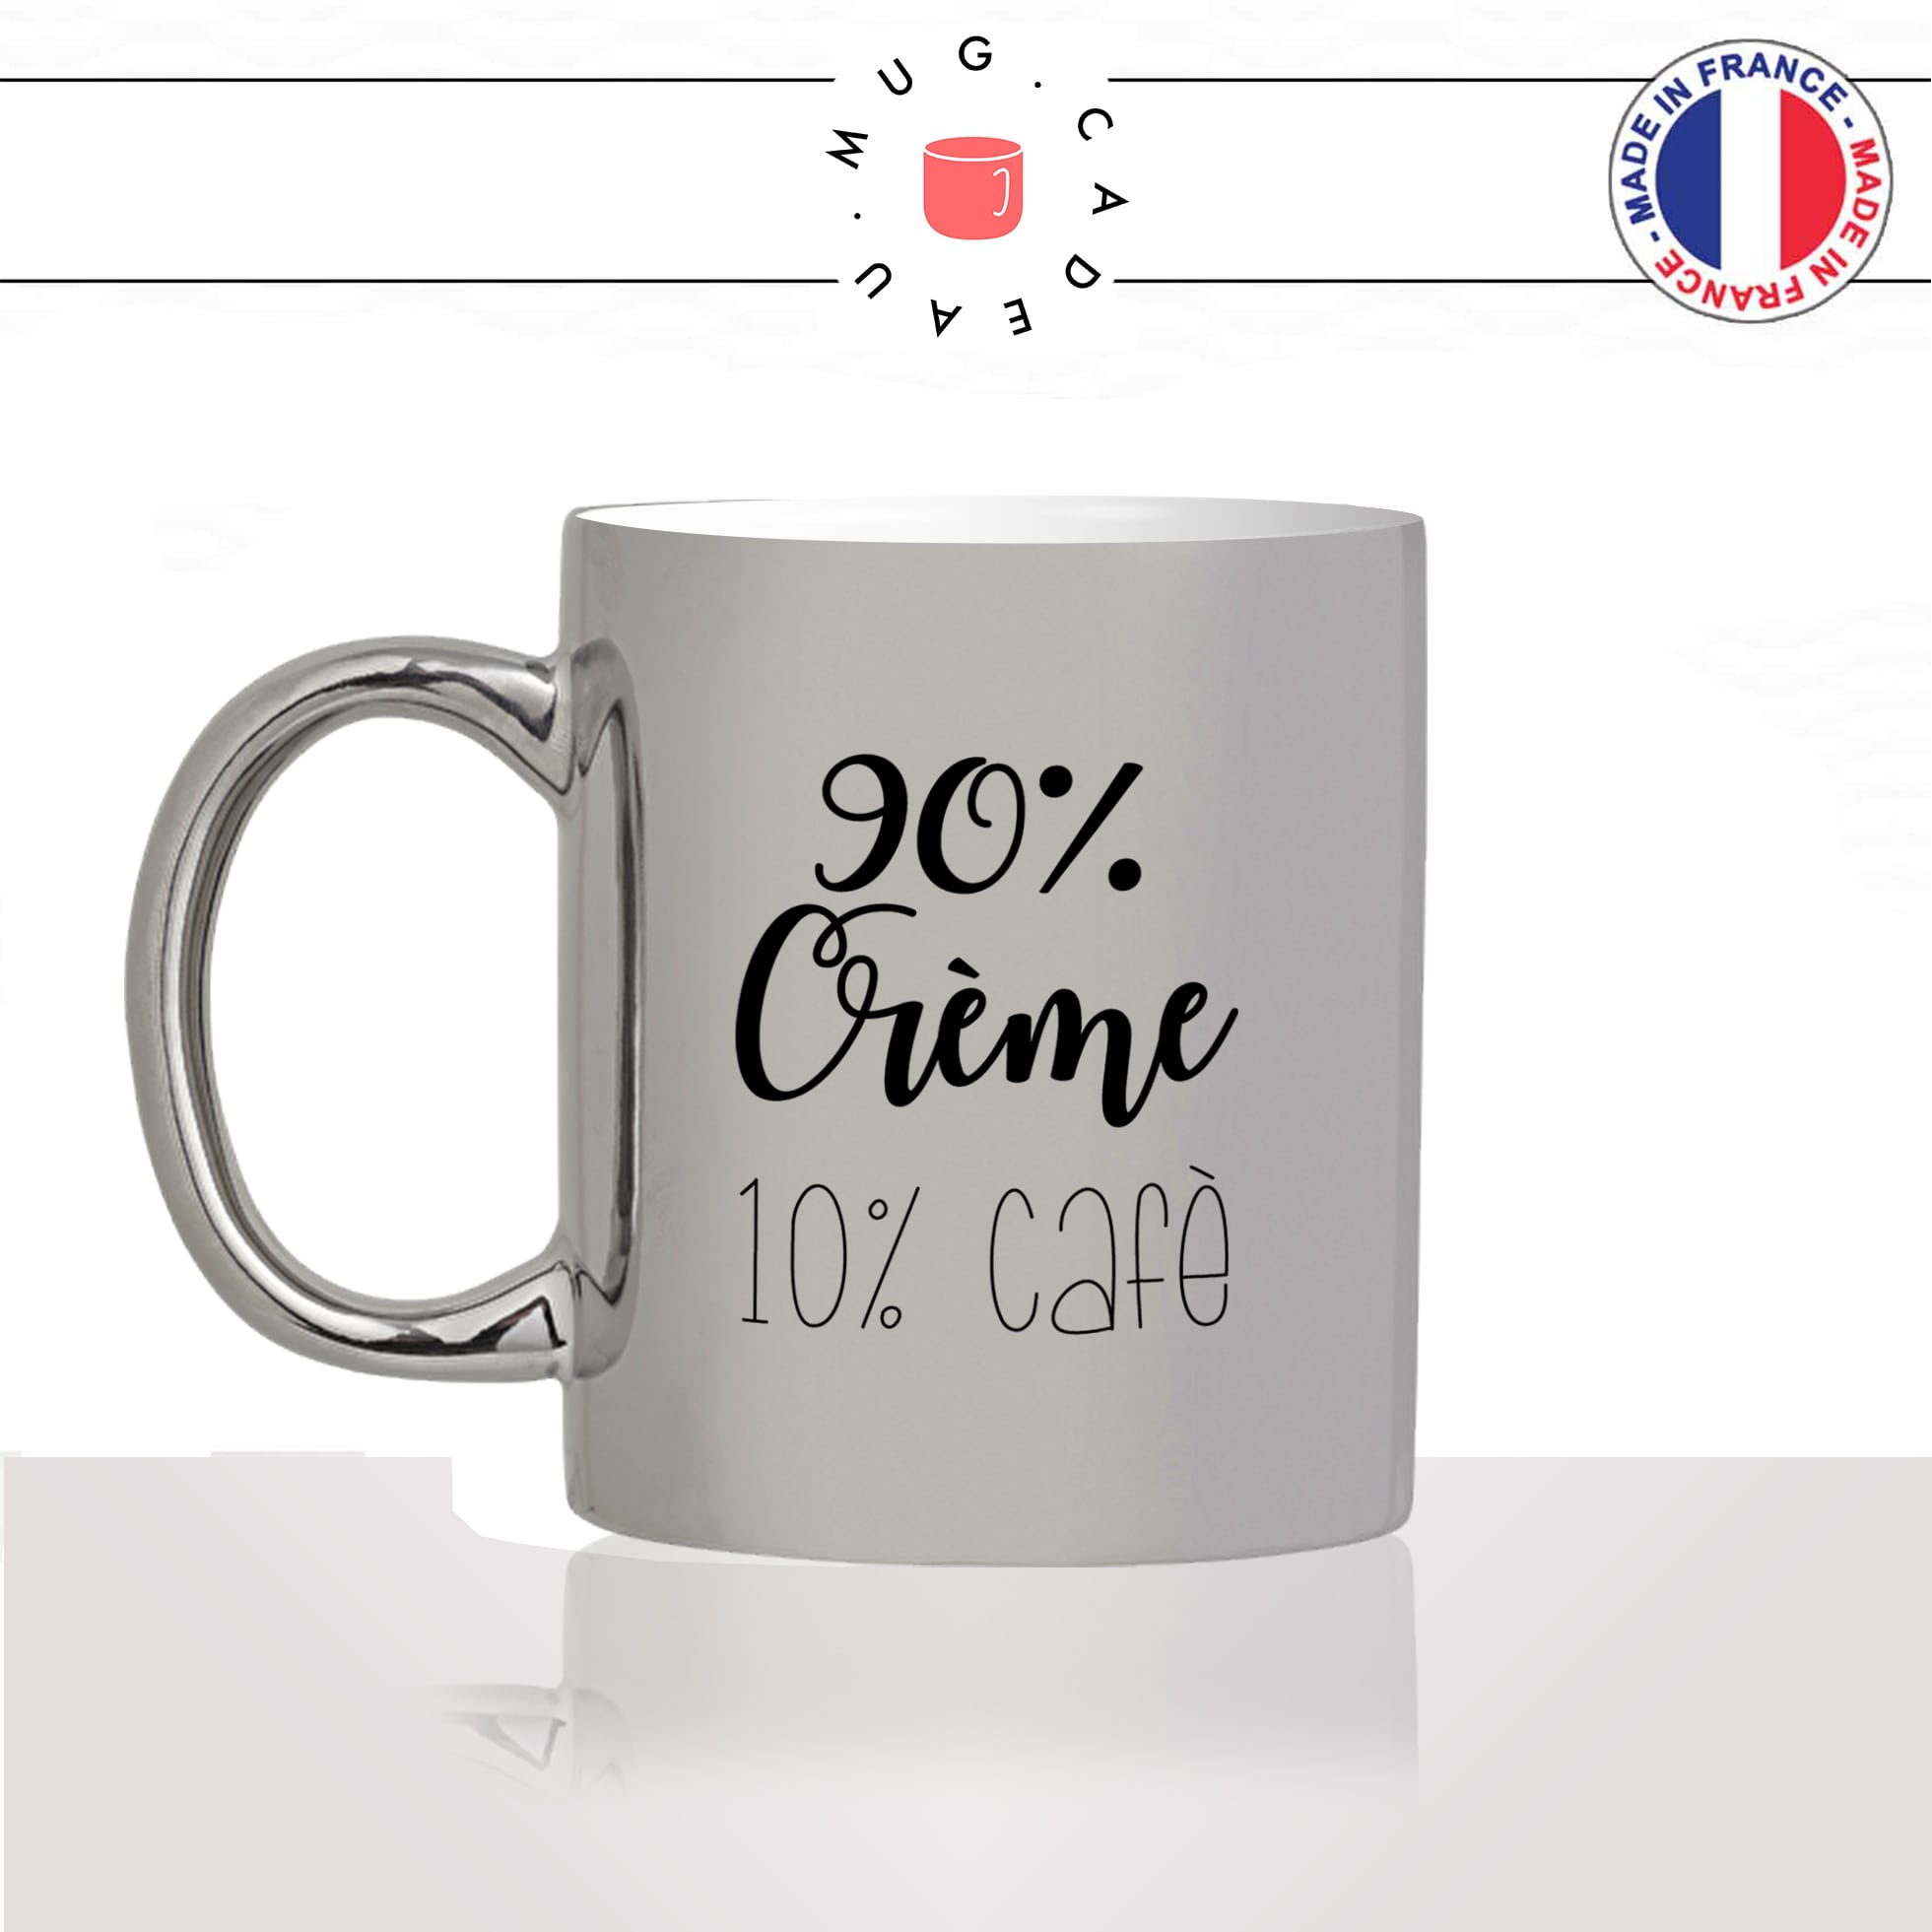 mug-tasse-silver-argenté-argent-cafe-crème-lait-macchiato-latte-cappuccino-humour--amour-idée-cadeau-original-personnalisé-café-thé-min